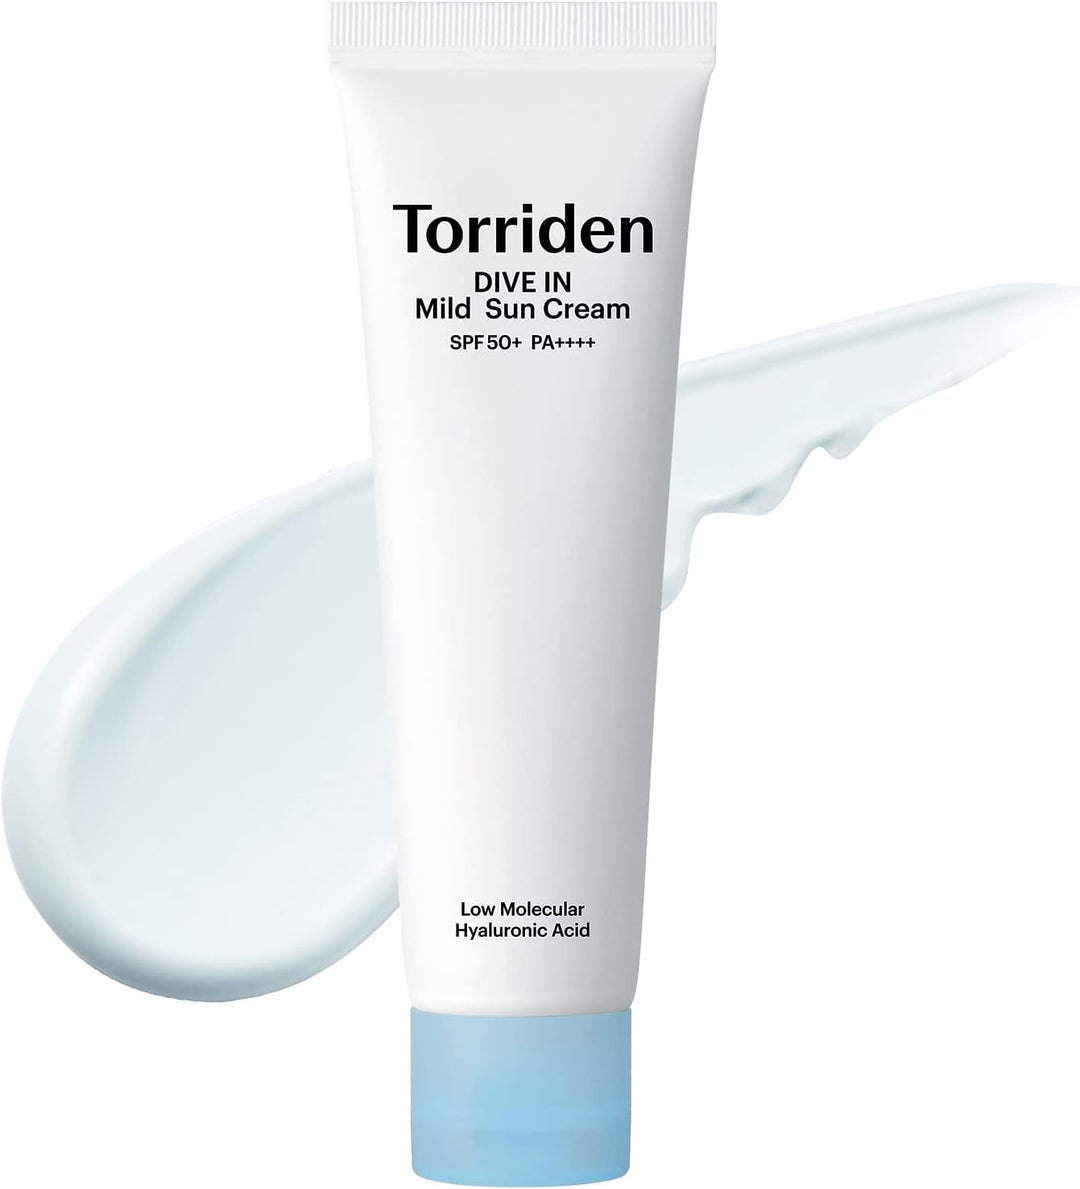 Torriden Dive-In Watery Mild Sun Cream 60ml